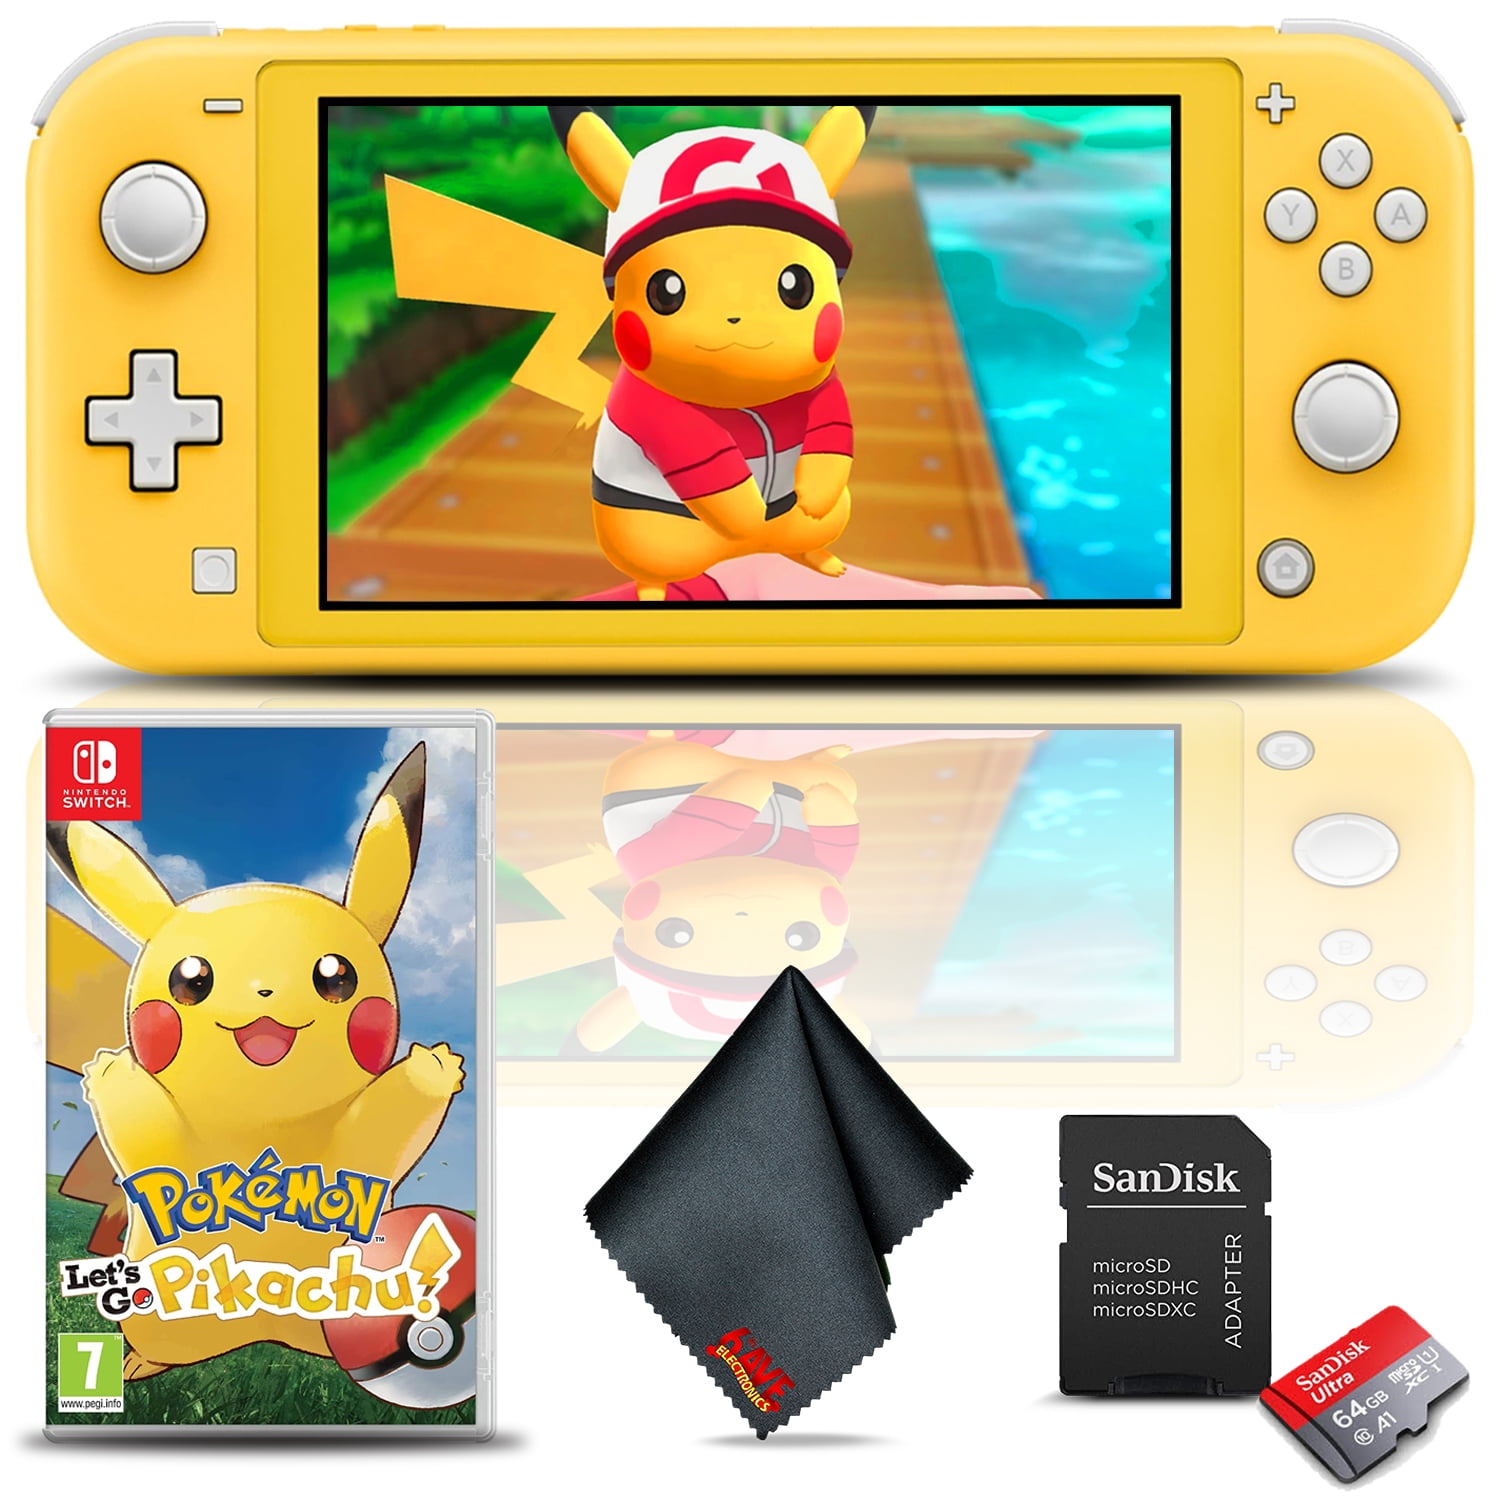 Nintendo Switch Lite (Yellow) with Pokemon: Let's Go Pikachu 64GB microSD - Walmart.com